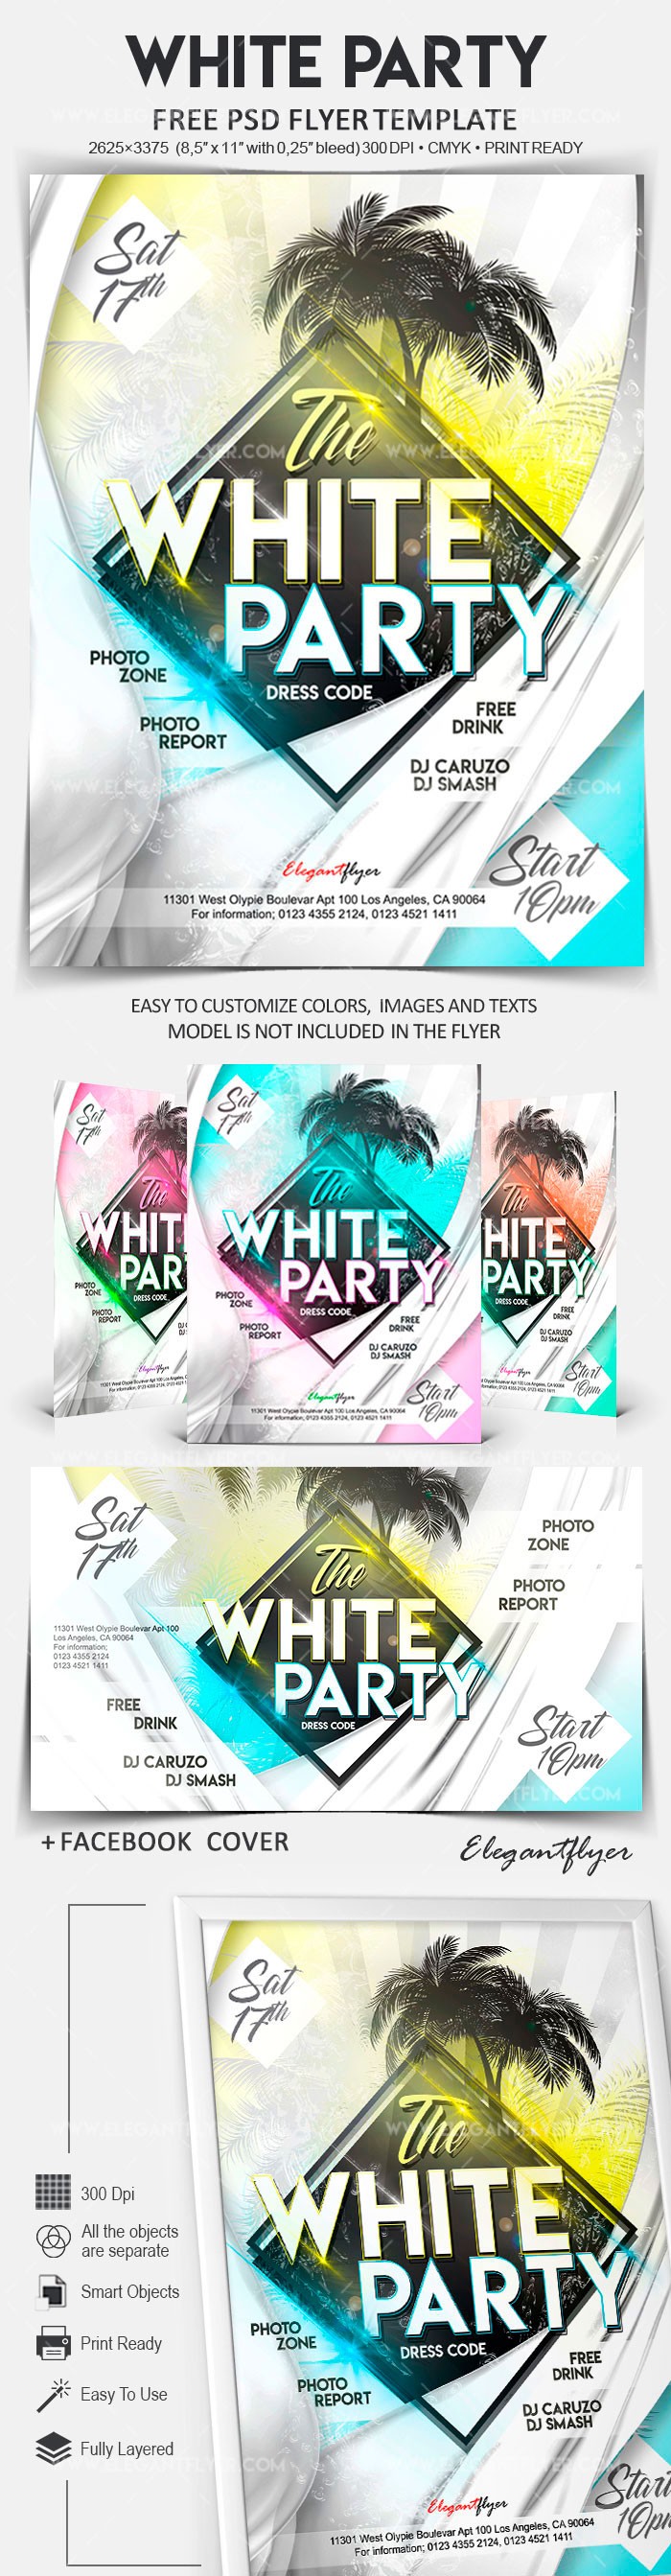 White Party by ElegantFlyer